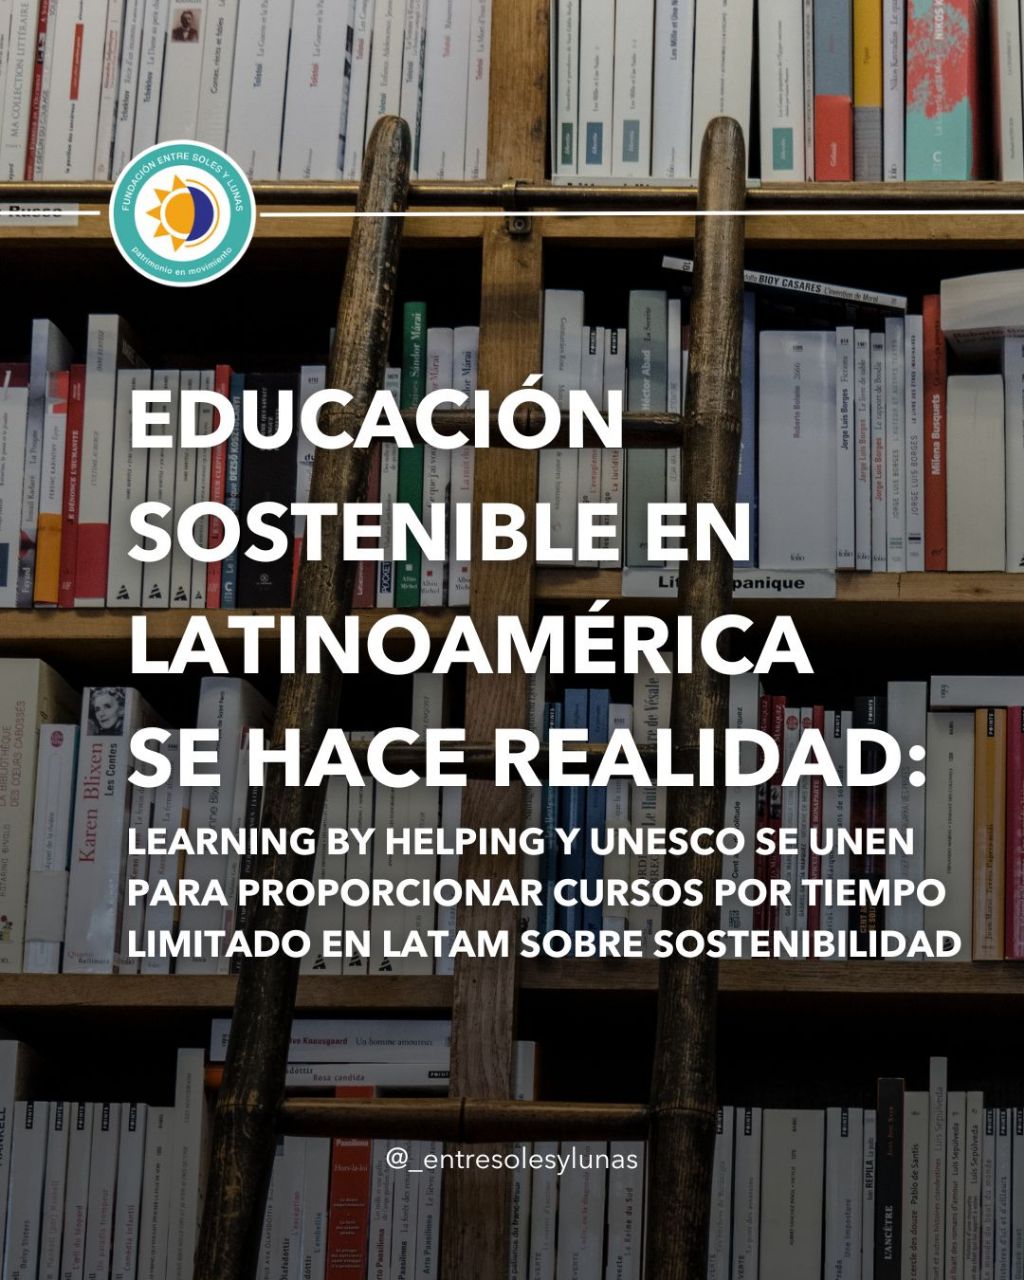 La Unesco y Learning by helping abren convocatoria para la primera edición de su certificación docente en innovación social para el desarrollo sostenible